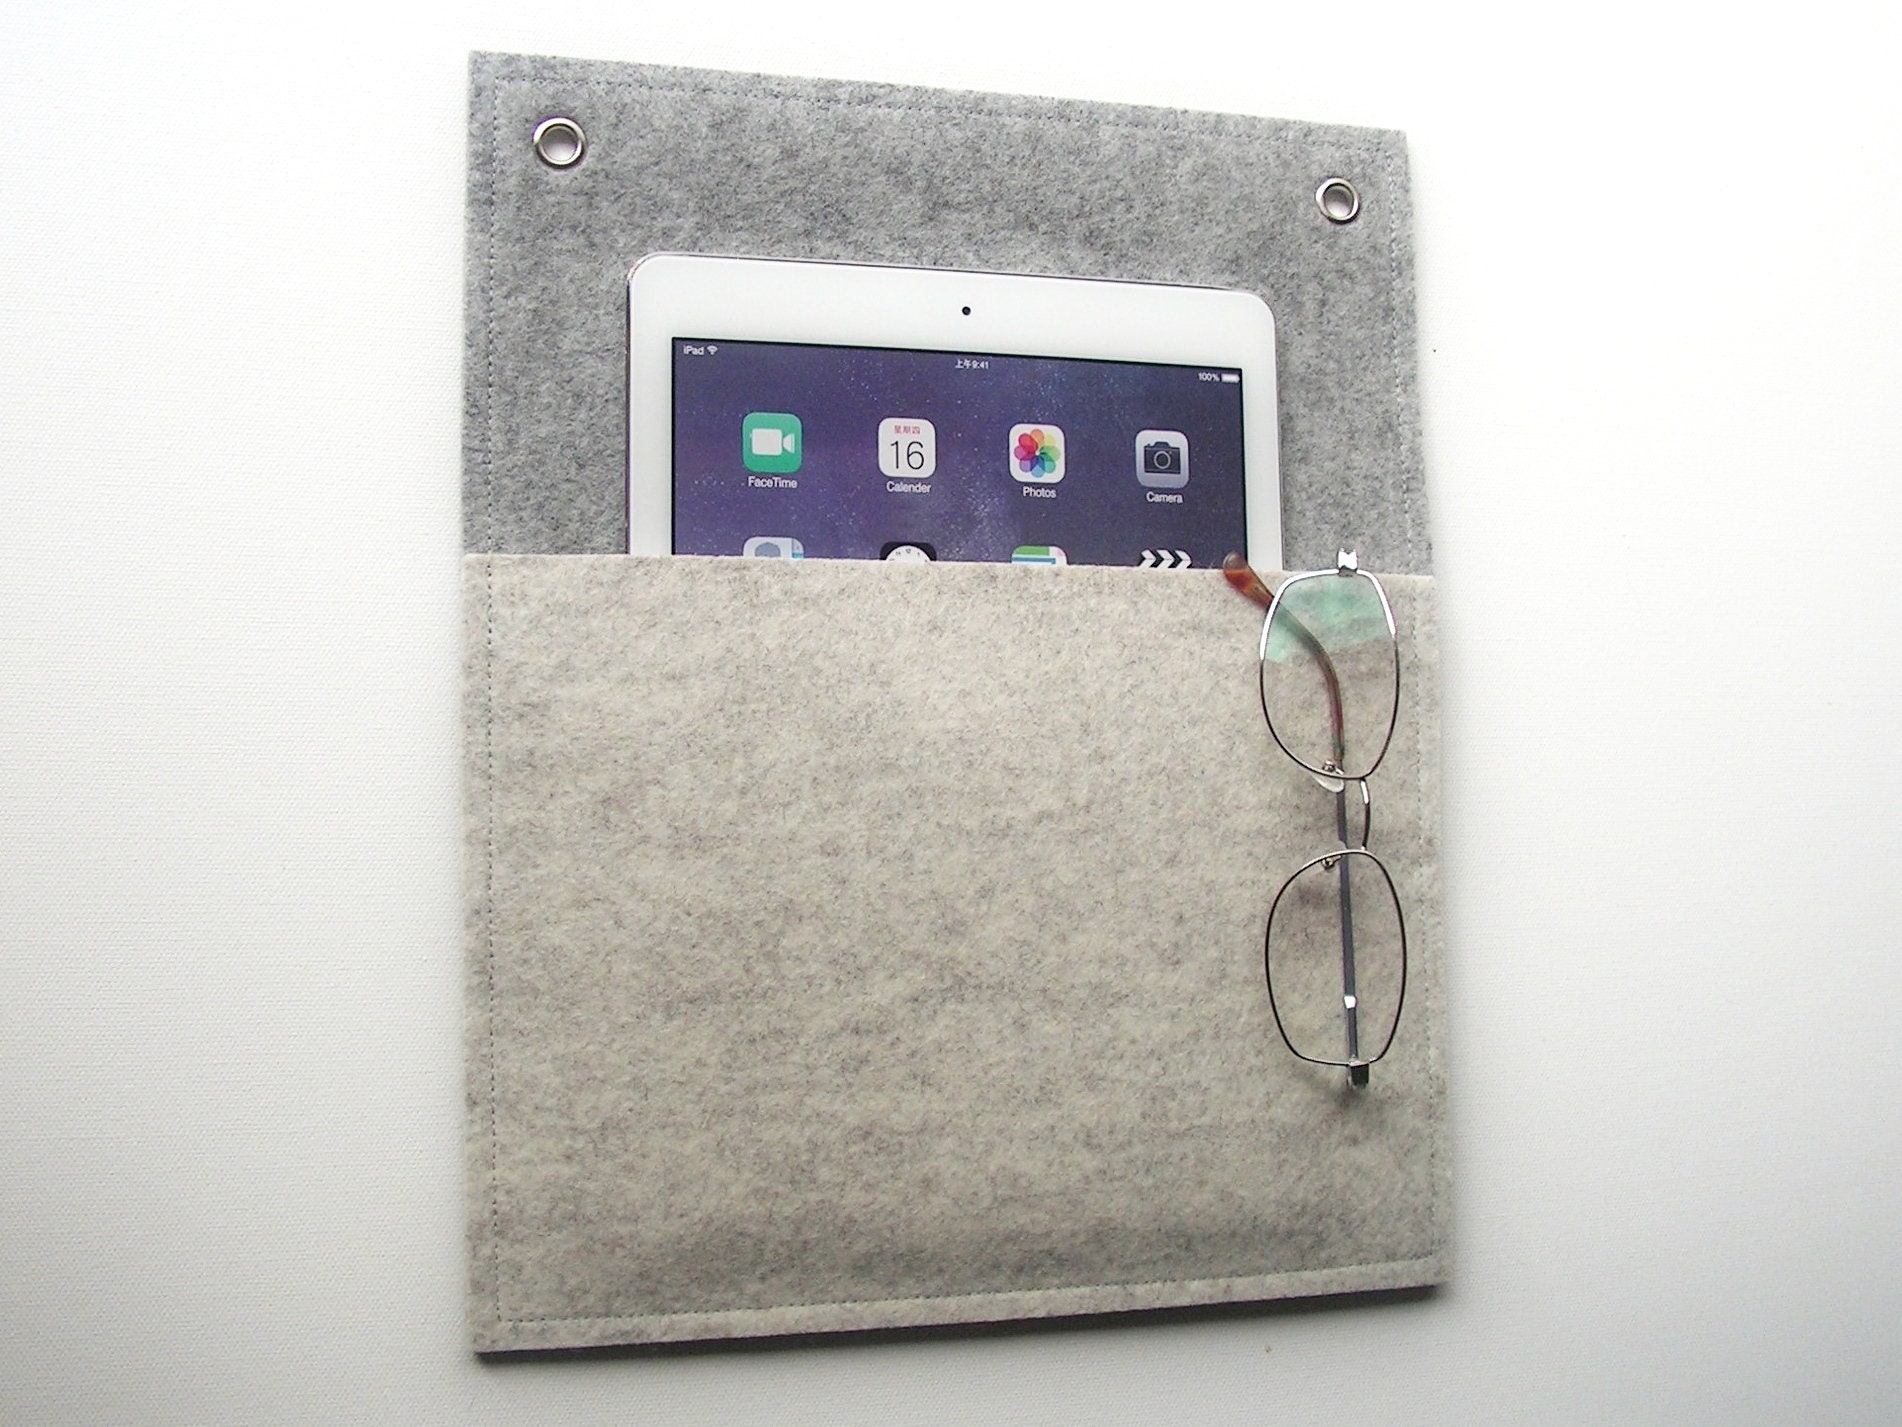 Wollfilz Wandtasche für iPad, Hängeorganizer für Wohnmobil, Boot, WG Zimmer  -  Österreich